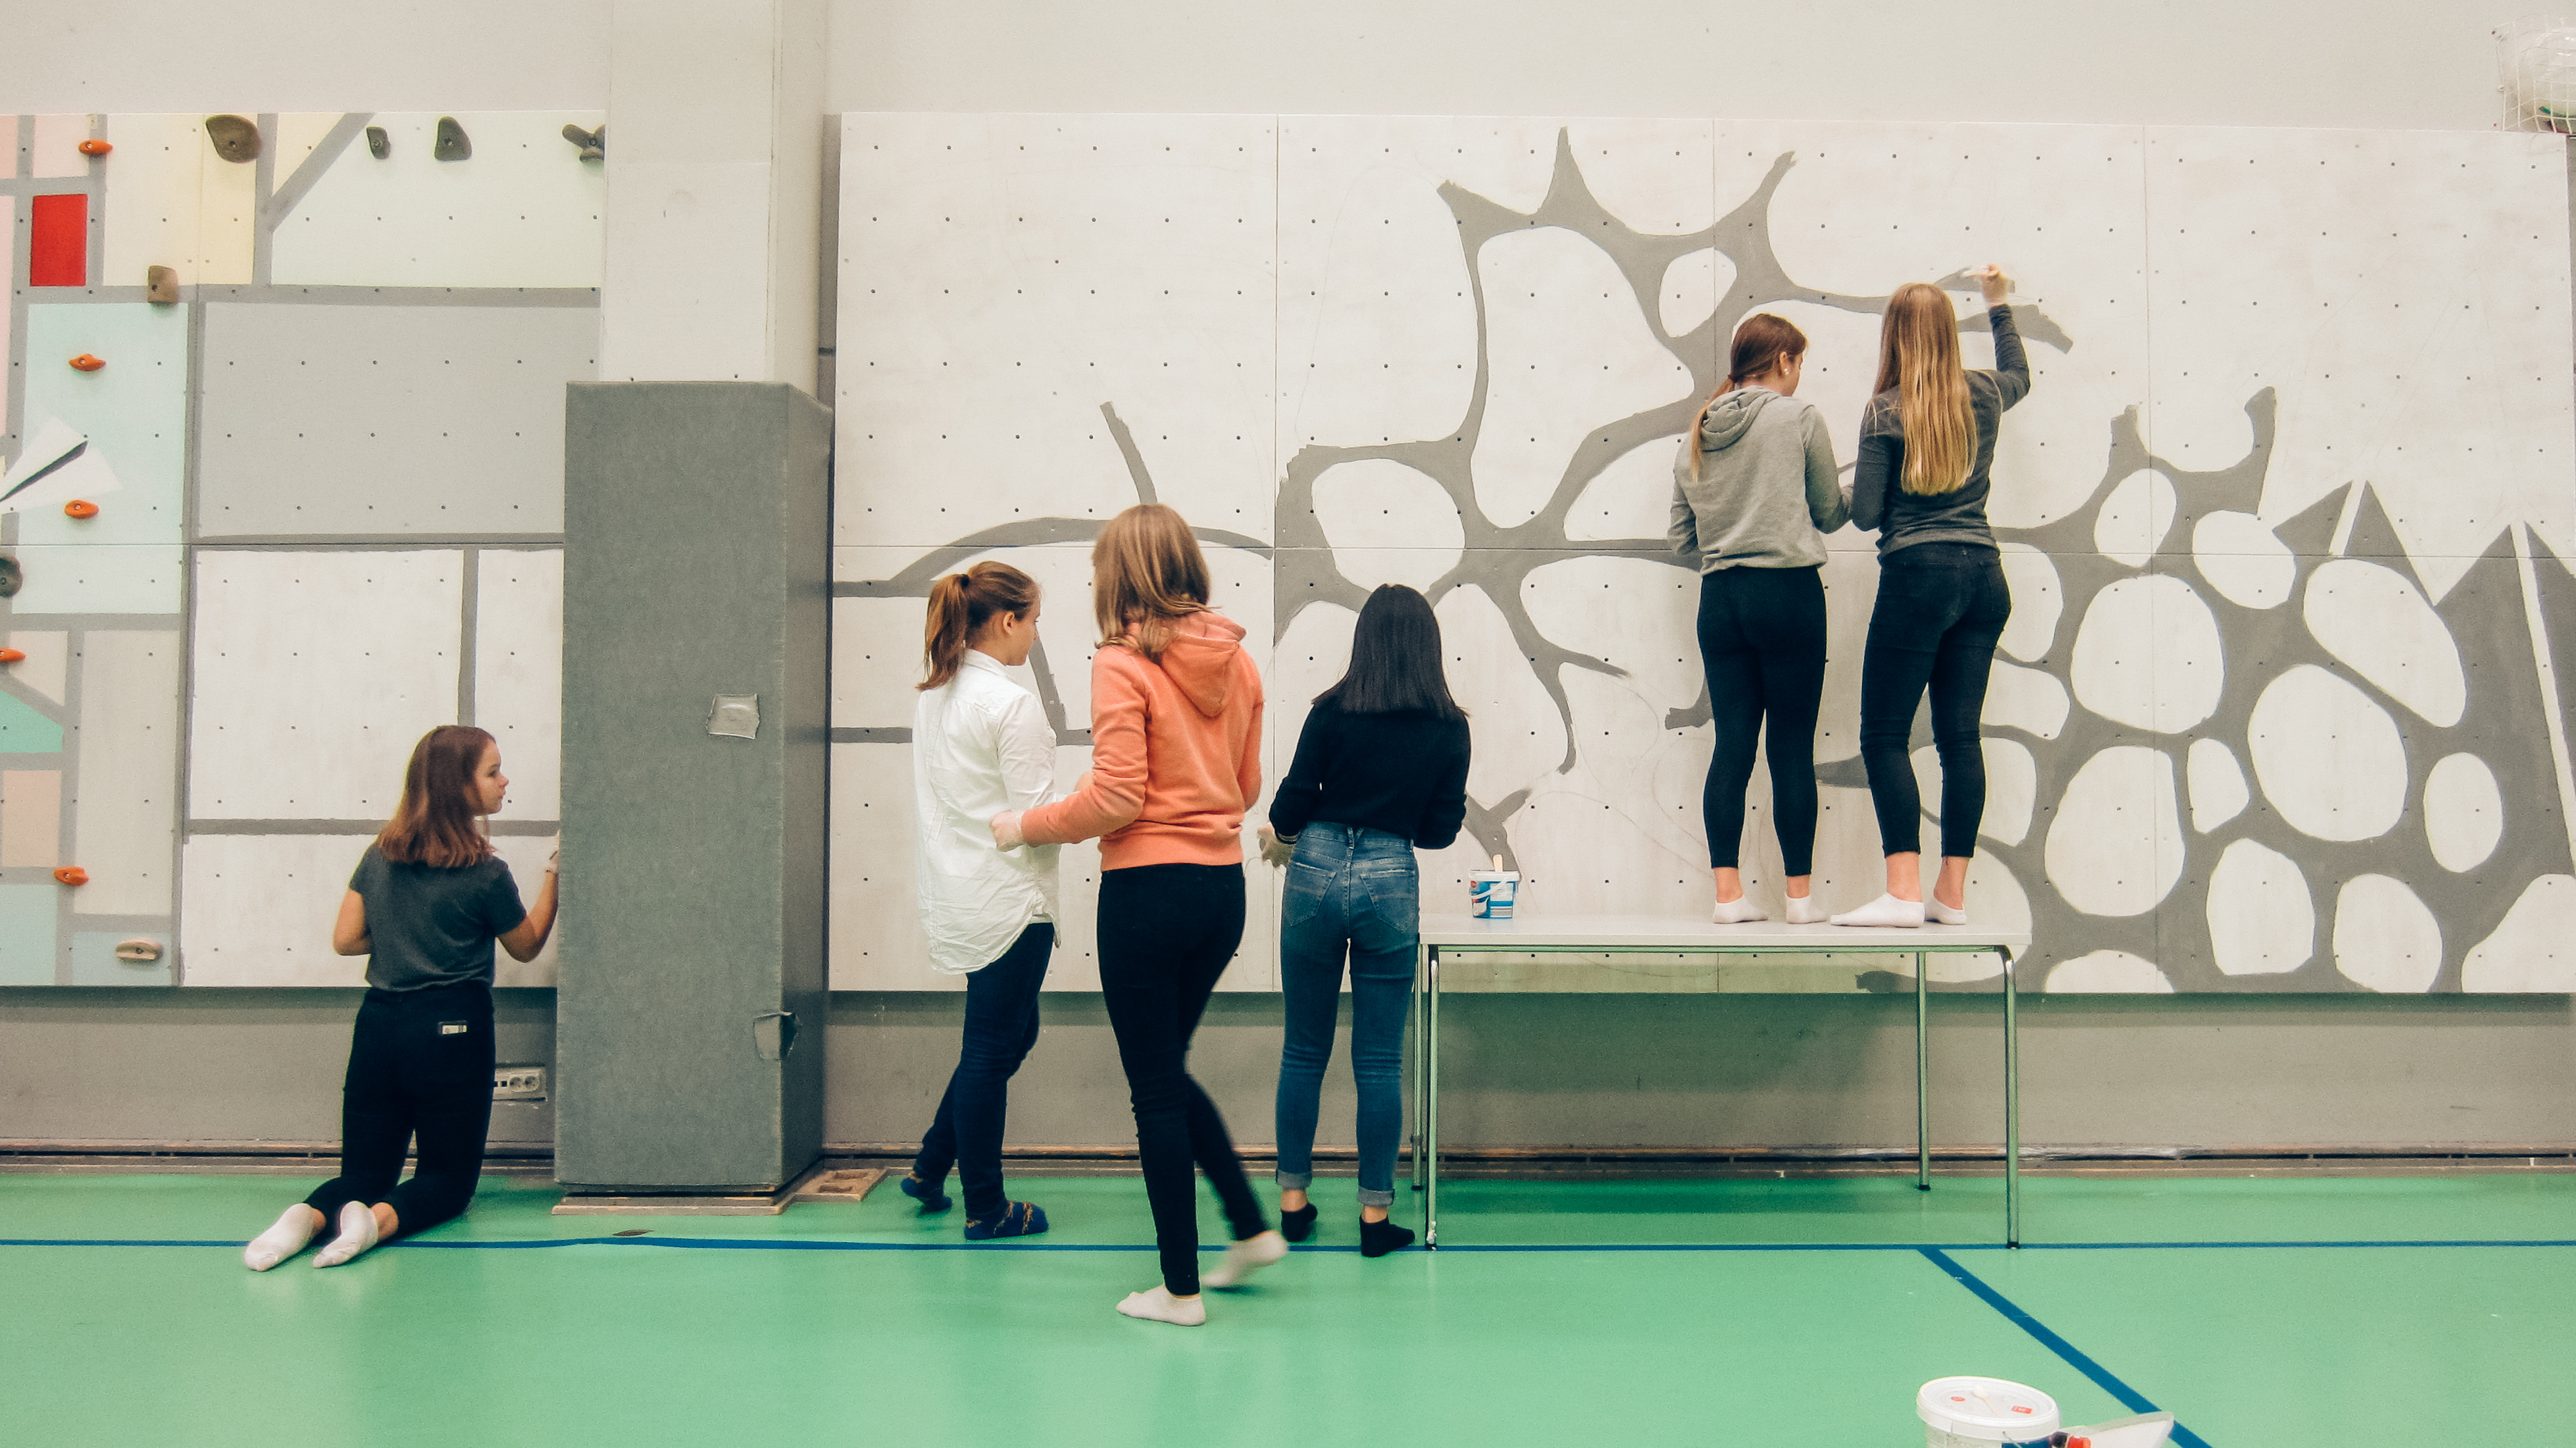 芬蘭學生在壁面上進行攀牆的彩繪創作，有兩位女學生站在桌上著色高處。